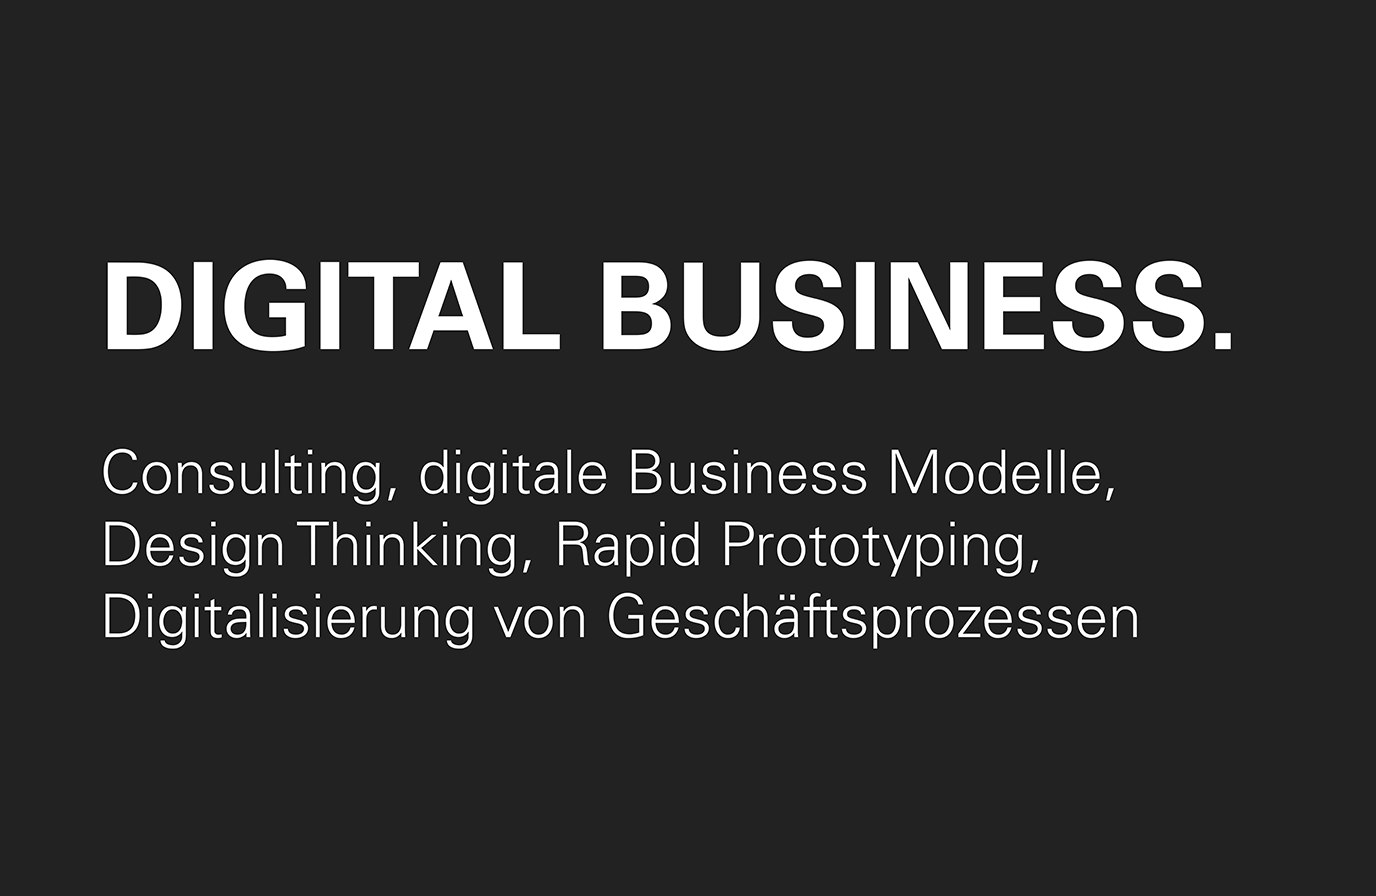 Leistung: Digital Business, Consulting, digitale Business Modelle, Design Thinking, Rapid Prototyping, Digitalisierung von Geschäftsprozessen, Digitale Transformation